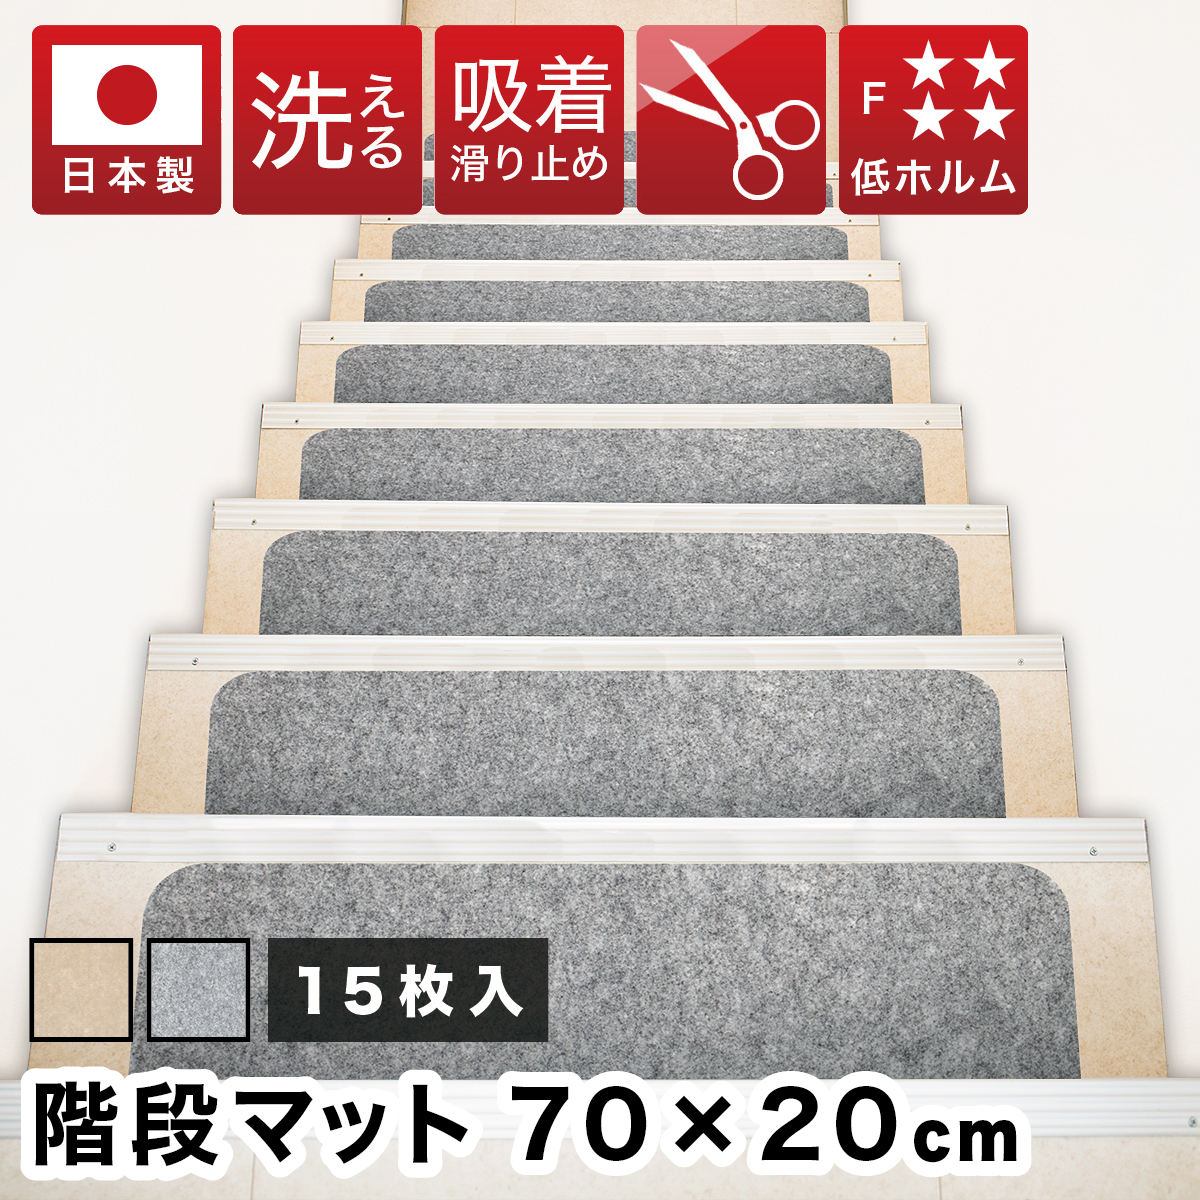 マット 階段用 滑り止めカーペット おくぺた 15枚 すべり止め階段マット 日本製 吸着階段マット ワイド 幅70cm 階段 滑り止め カーペット 洗える